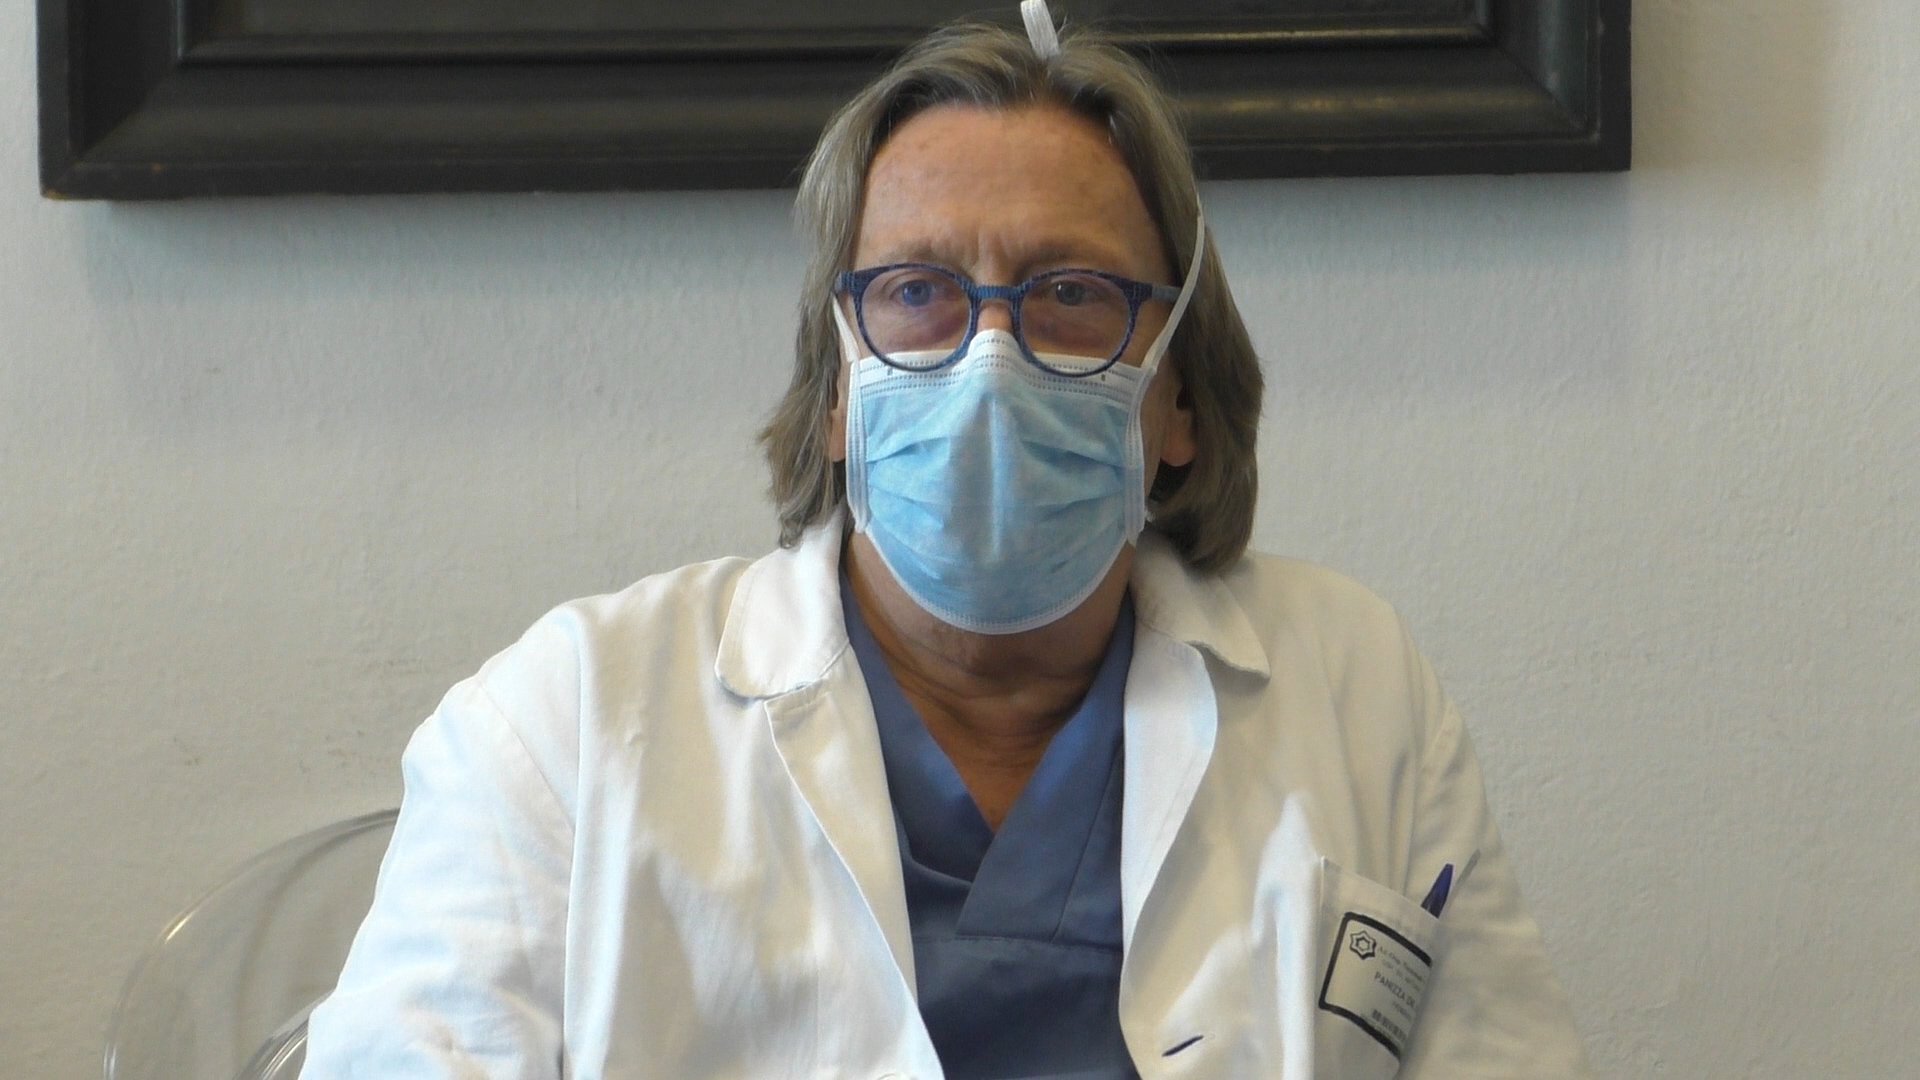 Tumore al seno, il ruolo del chirurgo plastico dell’Ospedale di Alessandria: “Ripristino la normalità”